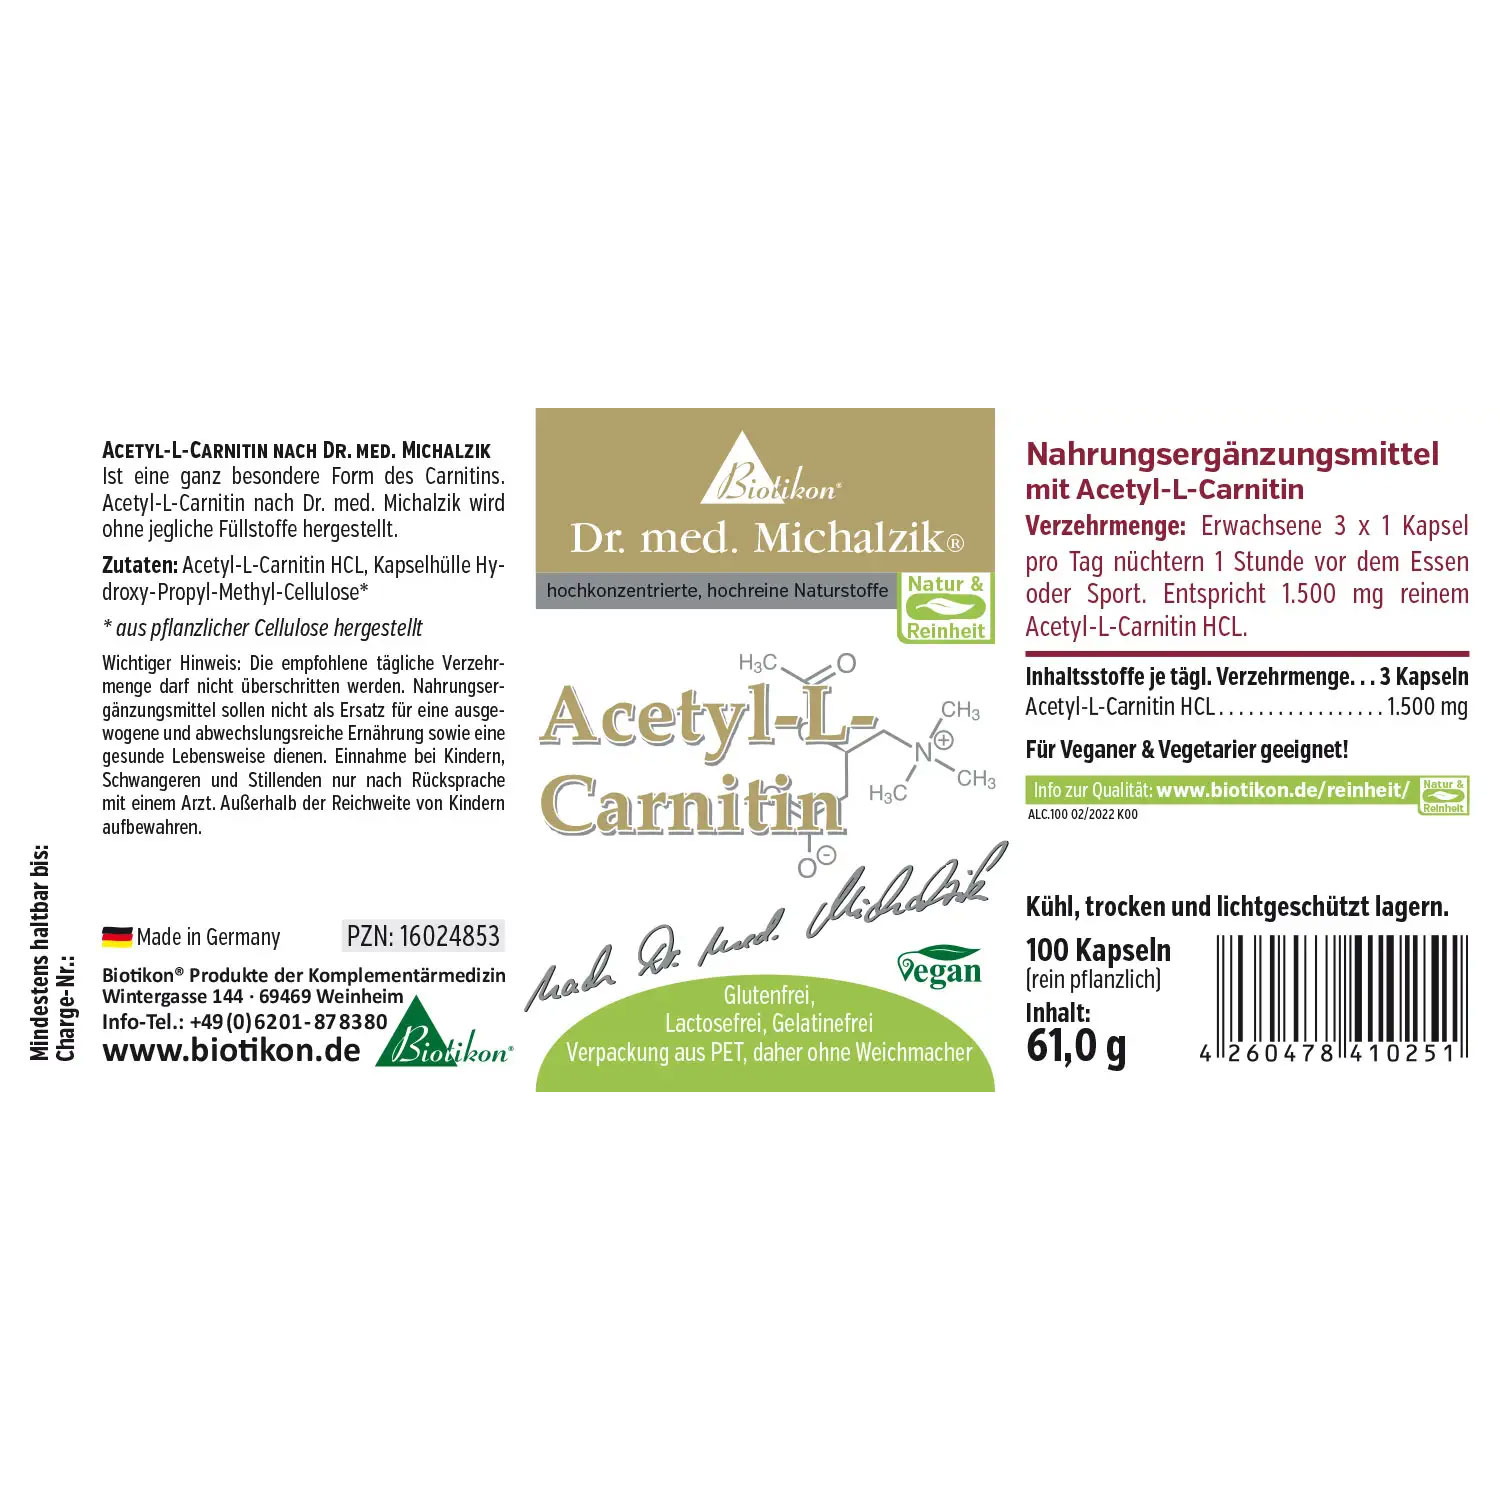 Acetyl-L-Carnitin von Biotikon - Etikett